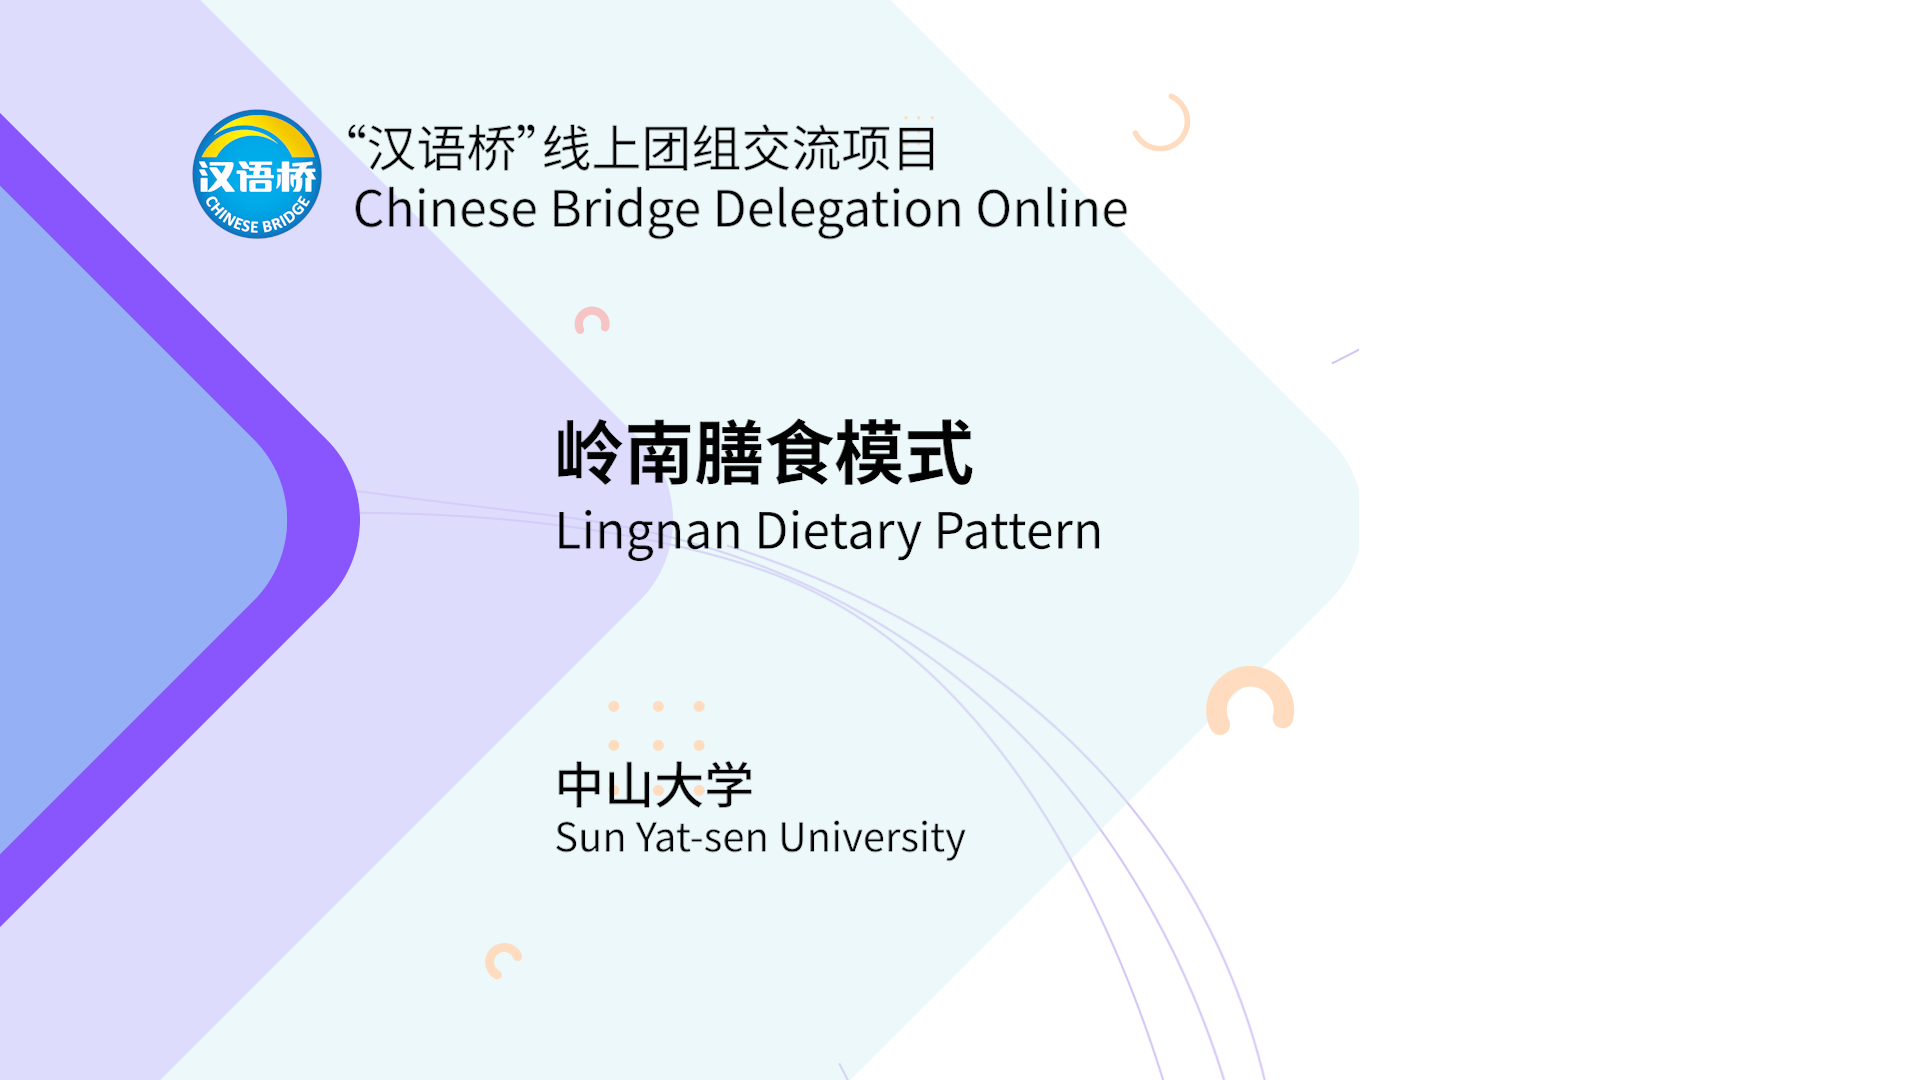 Lingnan Dietary Pattern